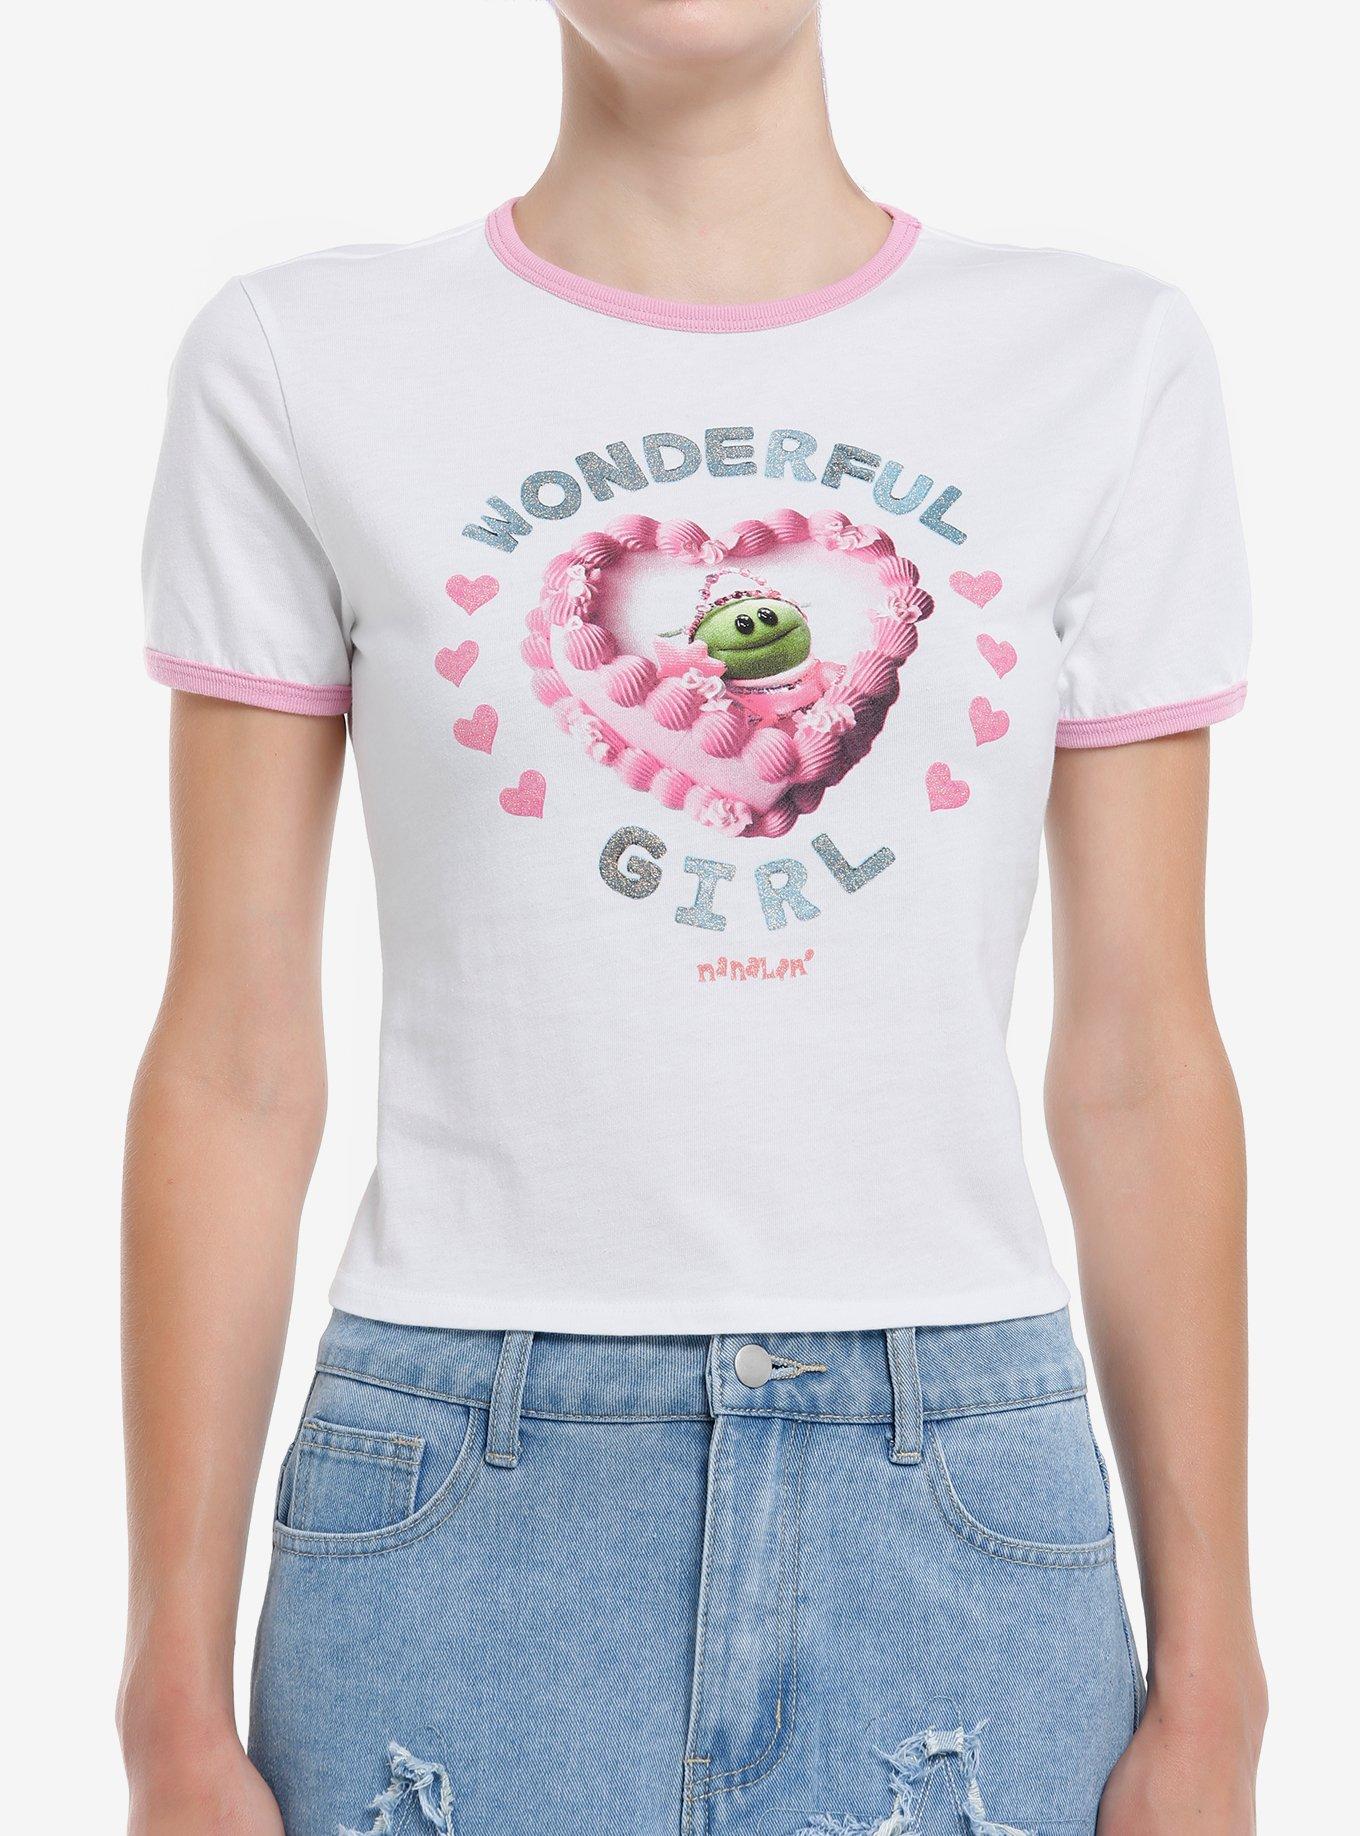 Nanalan' Mona Wonderful Girl Cake Glitter Ringer Girls Baby T-Shirt, , hi-res